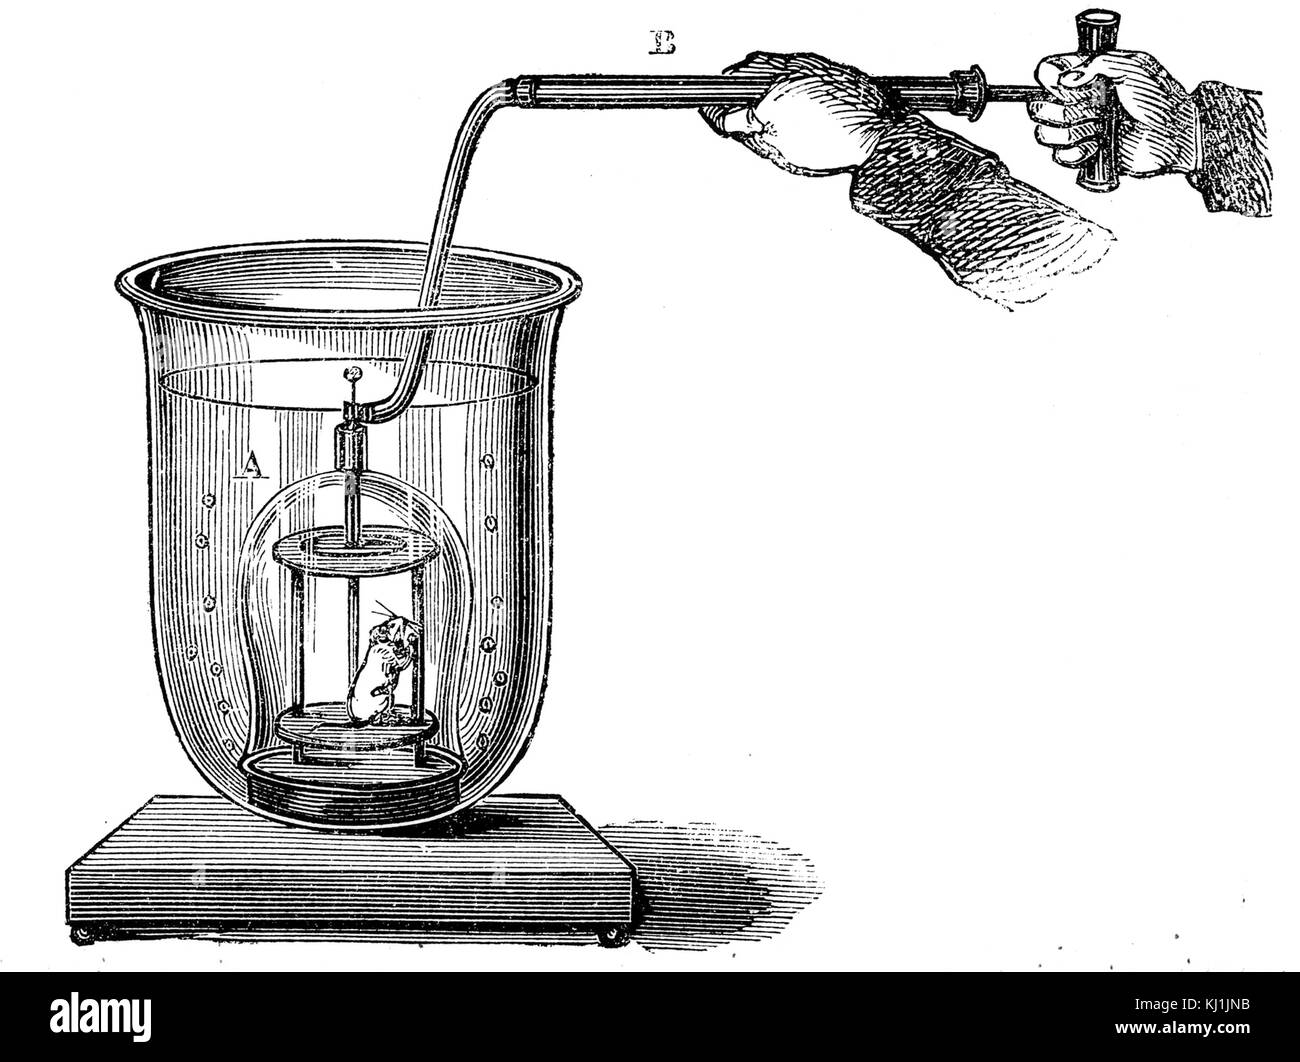 Kupferstich mit der Darstellung eines Miniatur Taucherglocke, die zeigen, wie ein brennwertkessel Pumpe Luft auf ein umgedrehtes Schiff umgeben von Wasser liefern können, die überschüssige Luft entweicht als blasen von unten. Vom 19. Jahrhundert Stockfoto